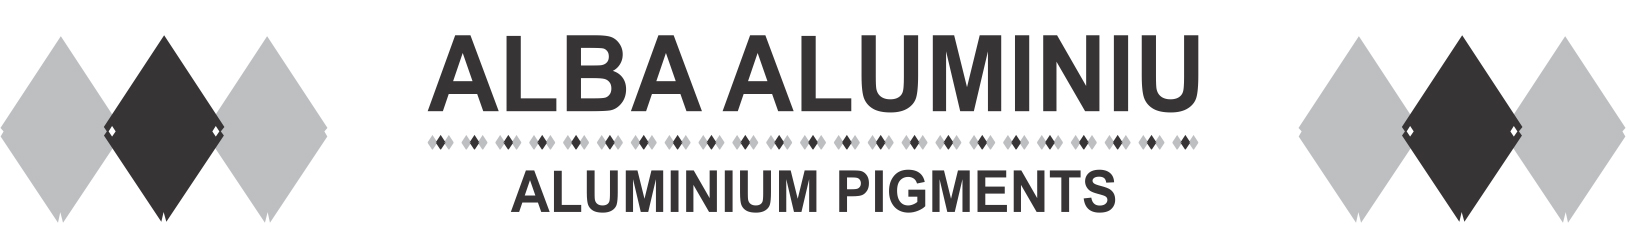 Alba Aluminiu